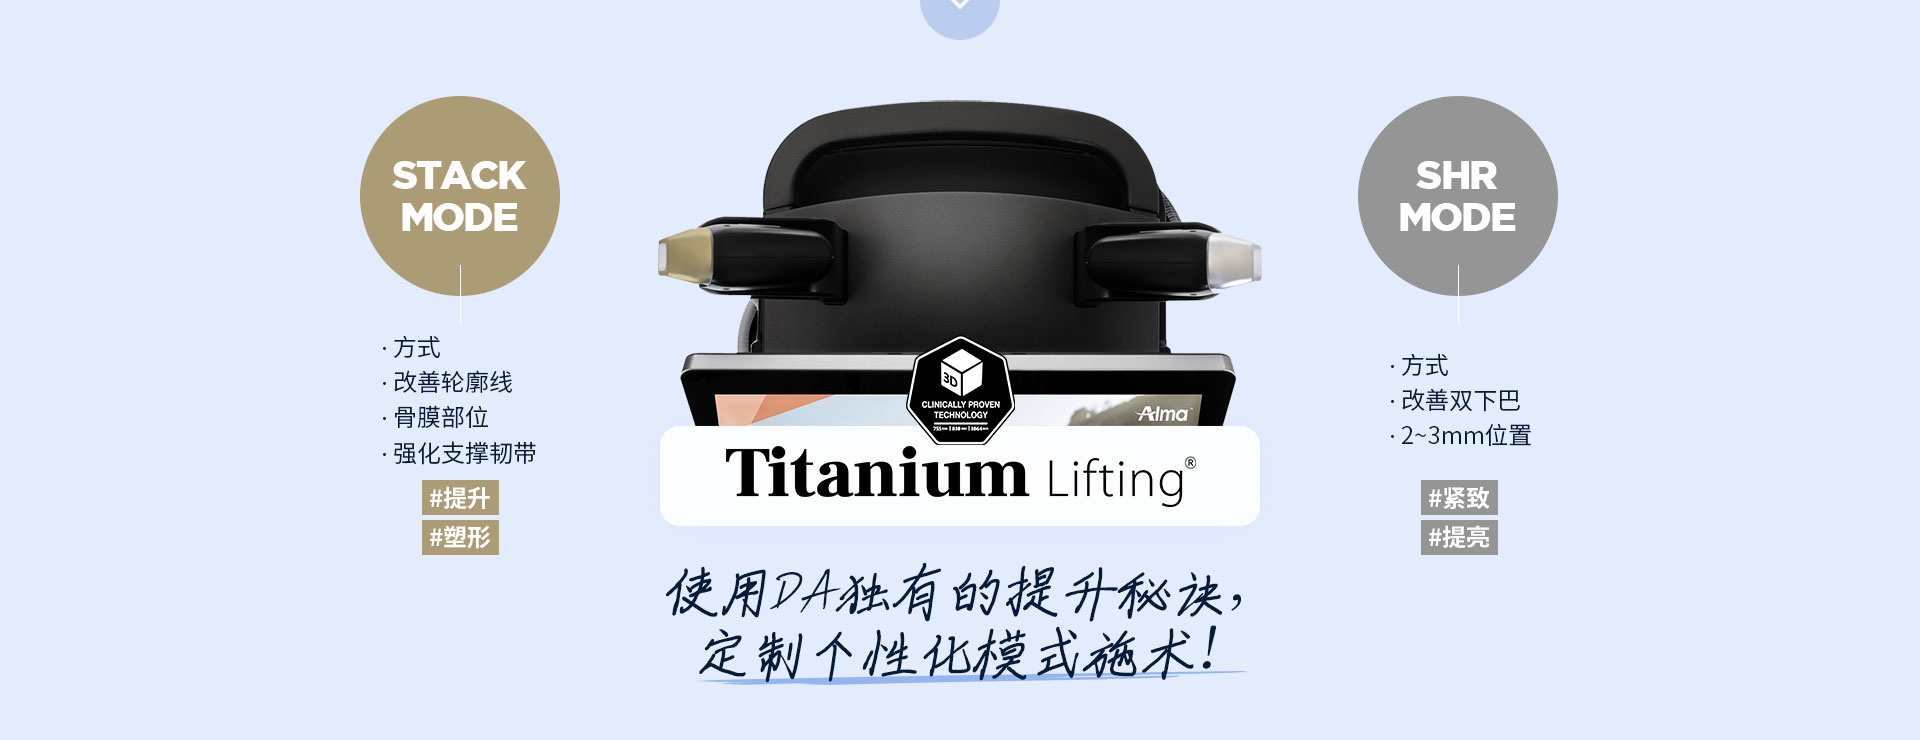 Titanium钛提升